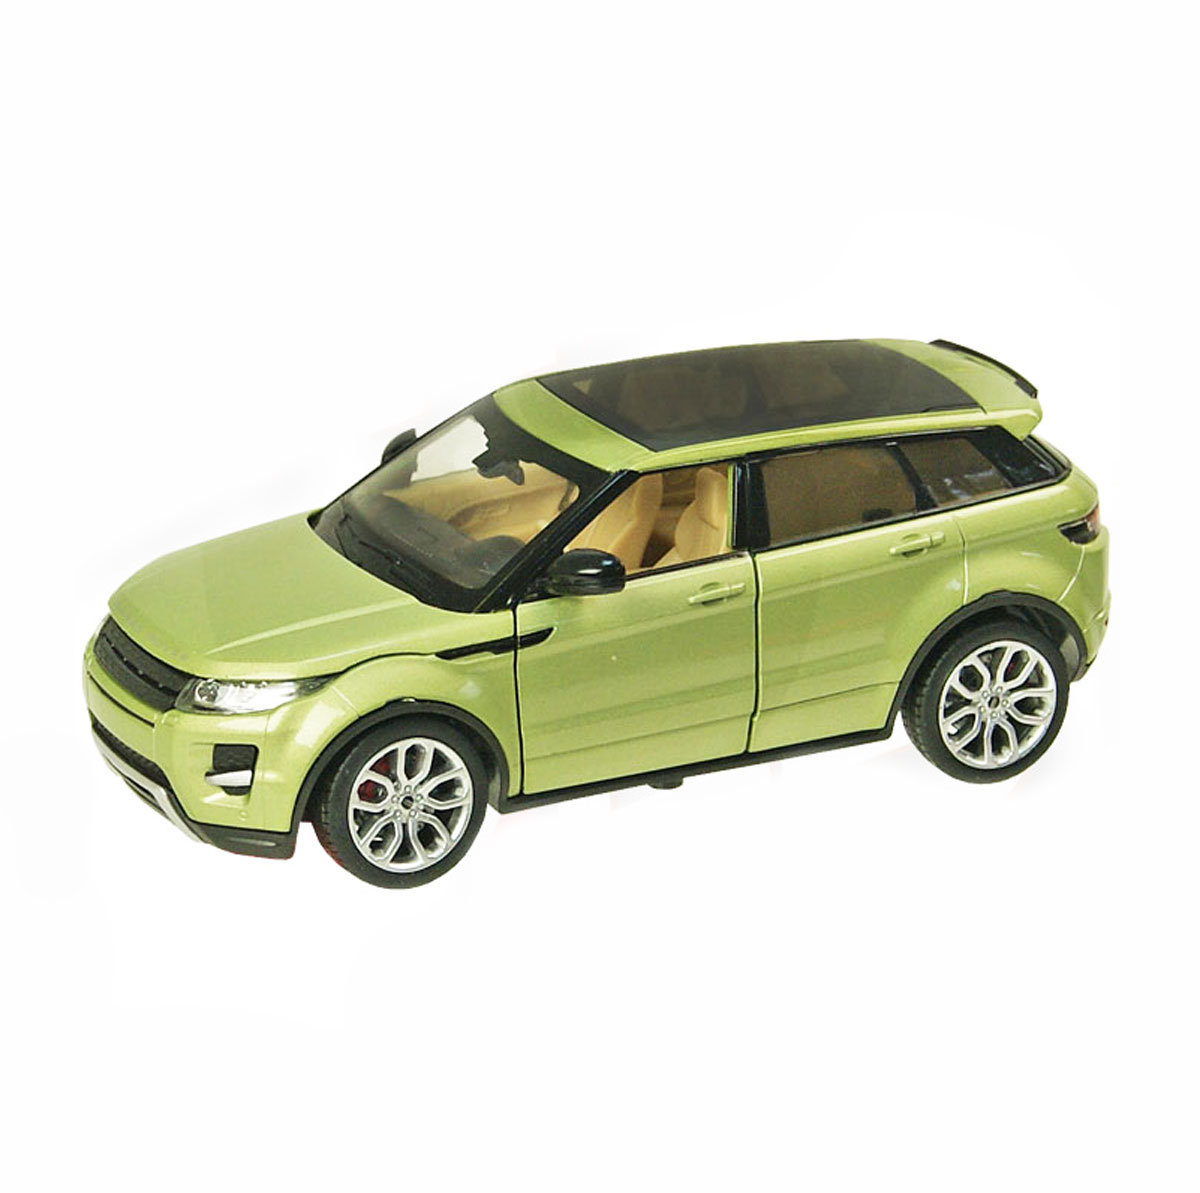 Іграшкова модель машини 'Автопром' Range Rover Evoque